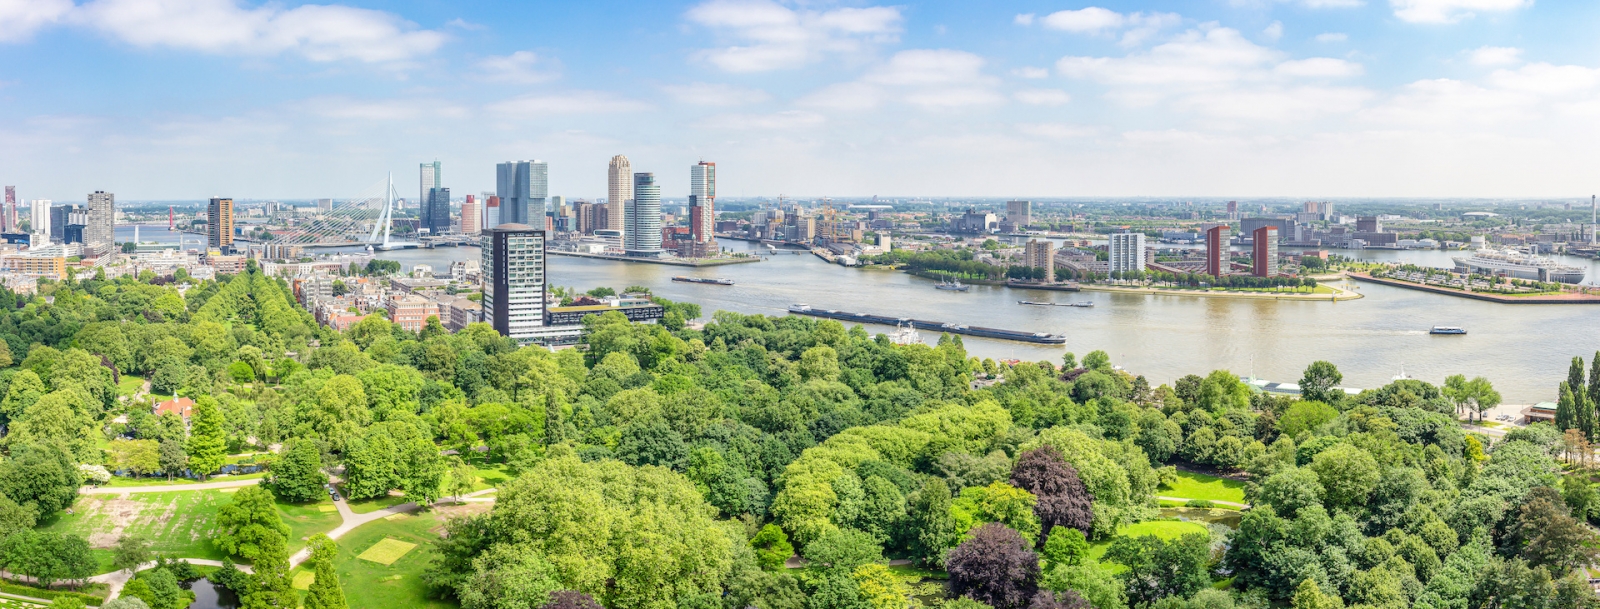 Vue panoramique de Rotterdam avec la Meuse et le pont Erasmus, le parc de l'Euromast, les bâtiments du terminal de croisière et l'hôtel New York, Katendrecht avec le SS Rotterdam